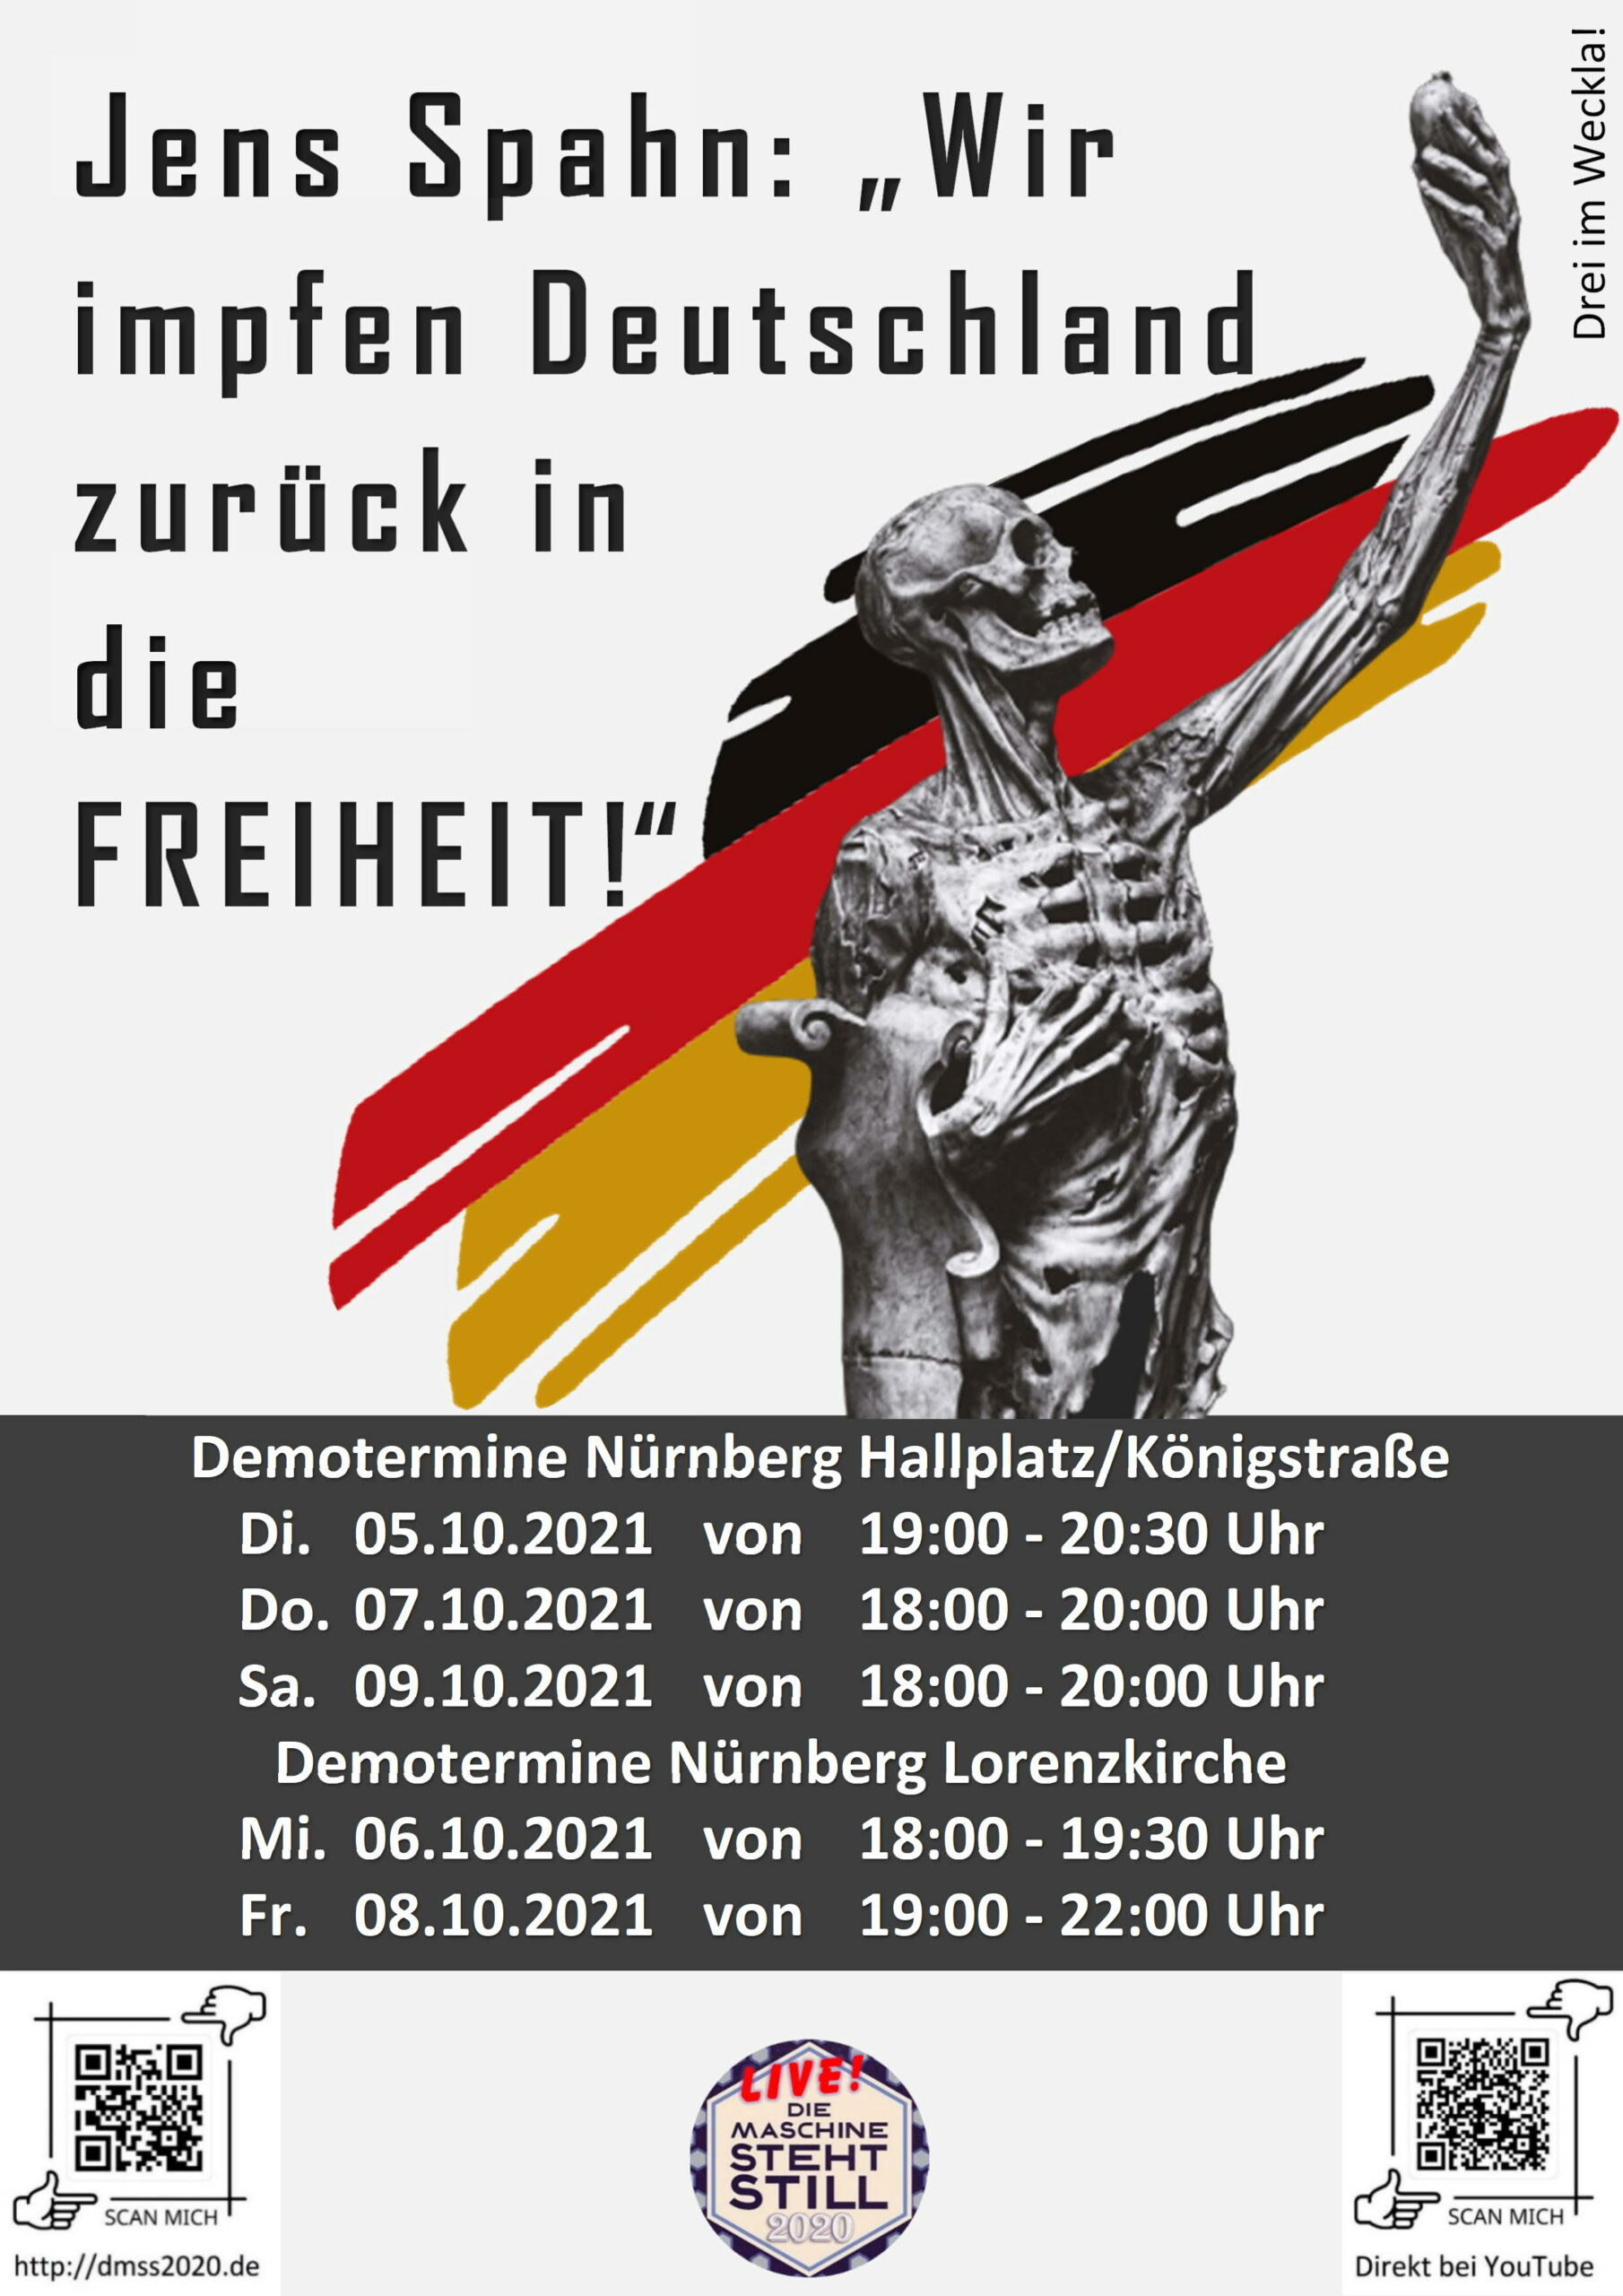 Jens Spahn: "Wir impfen Deutschland zurück in die Freiheit!"